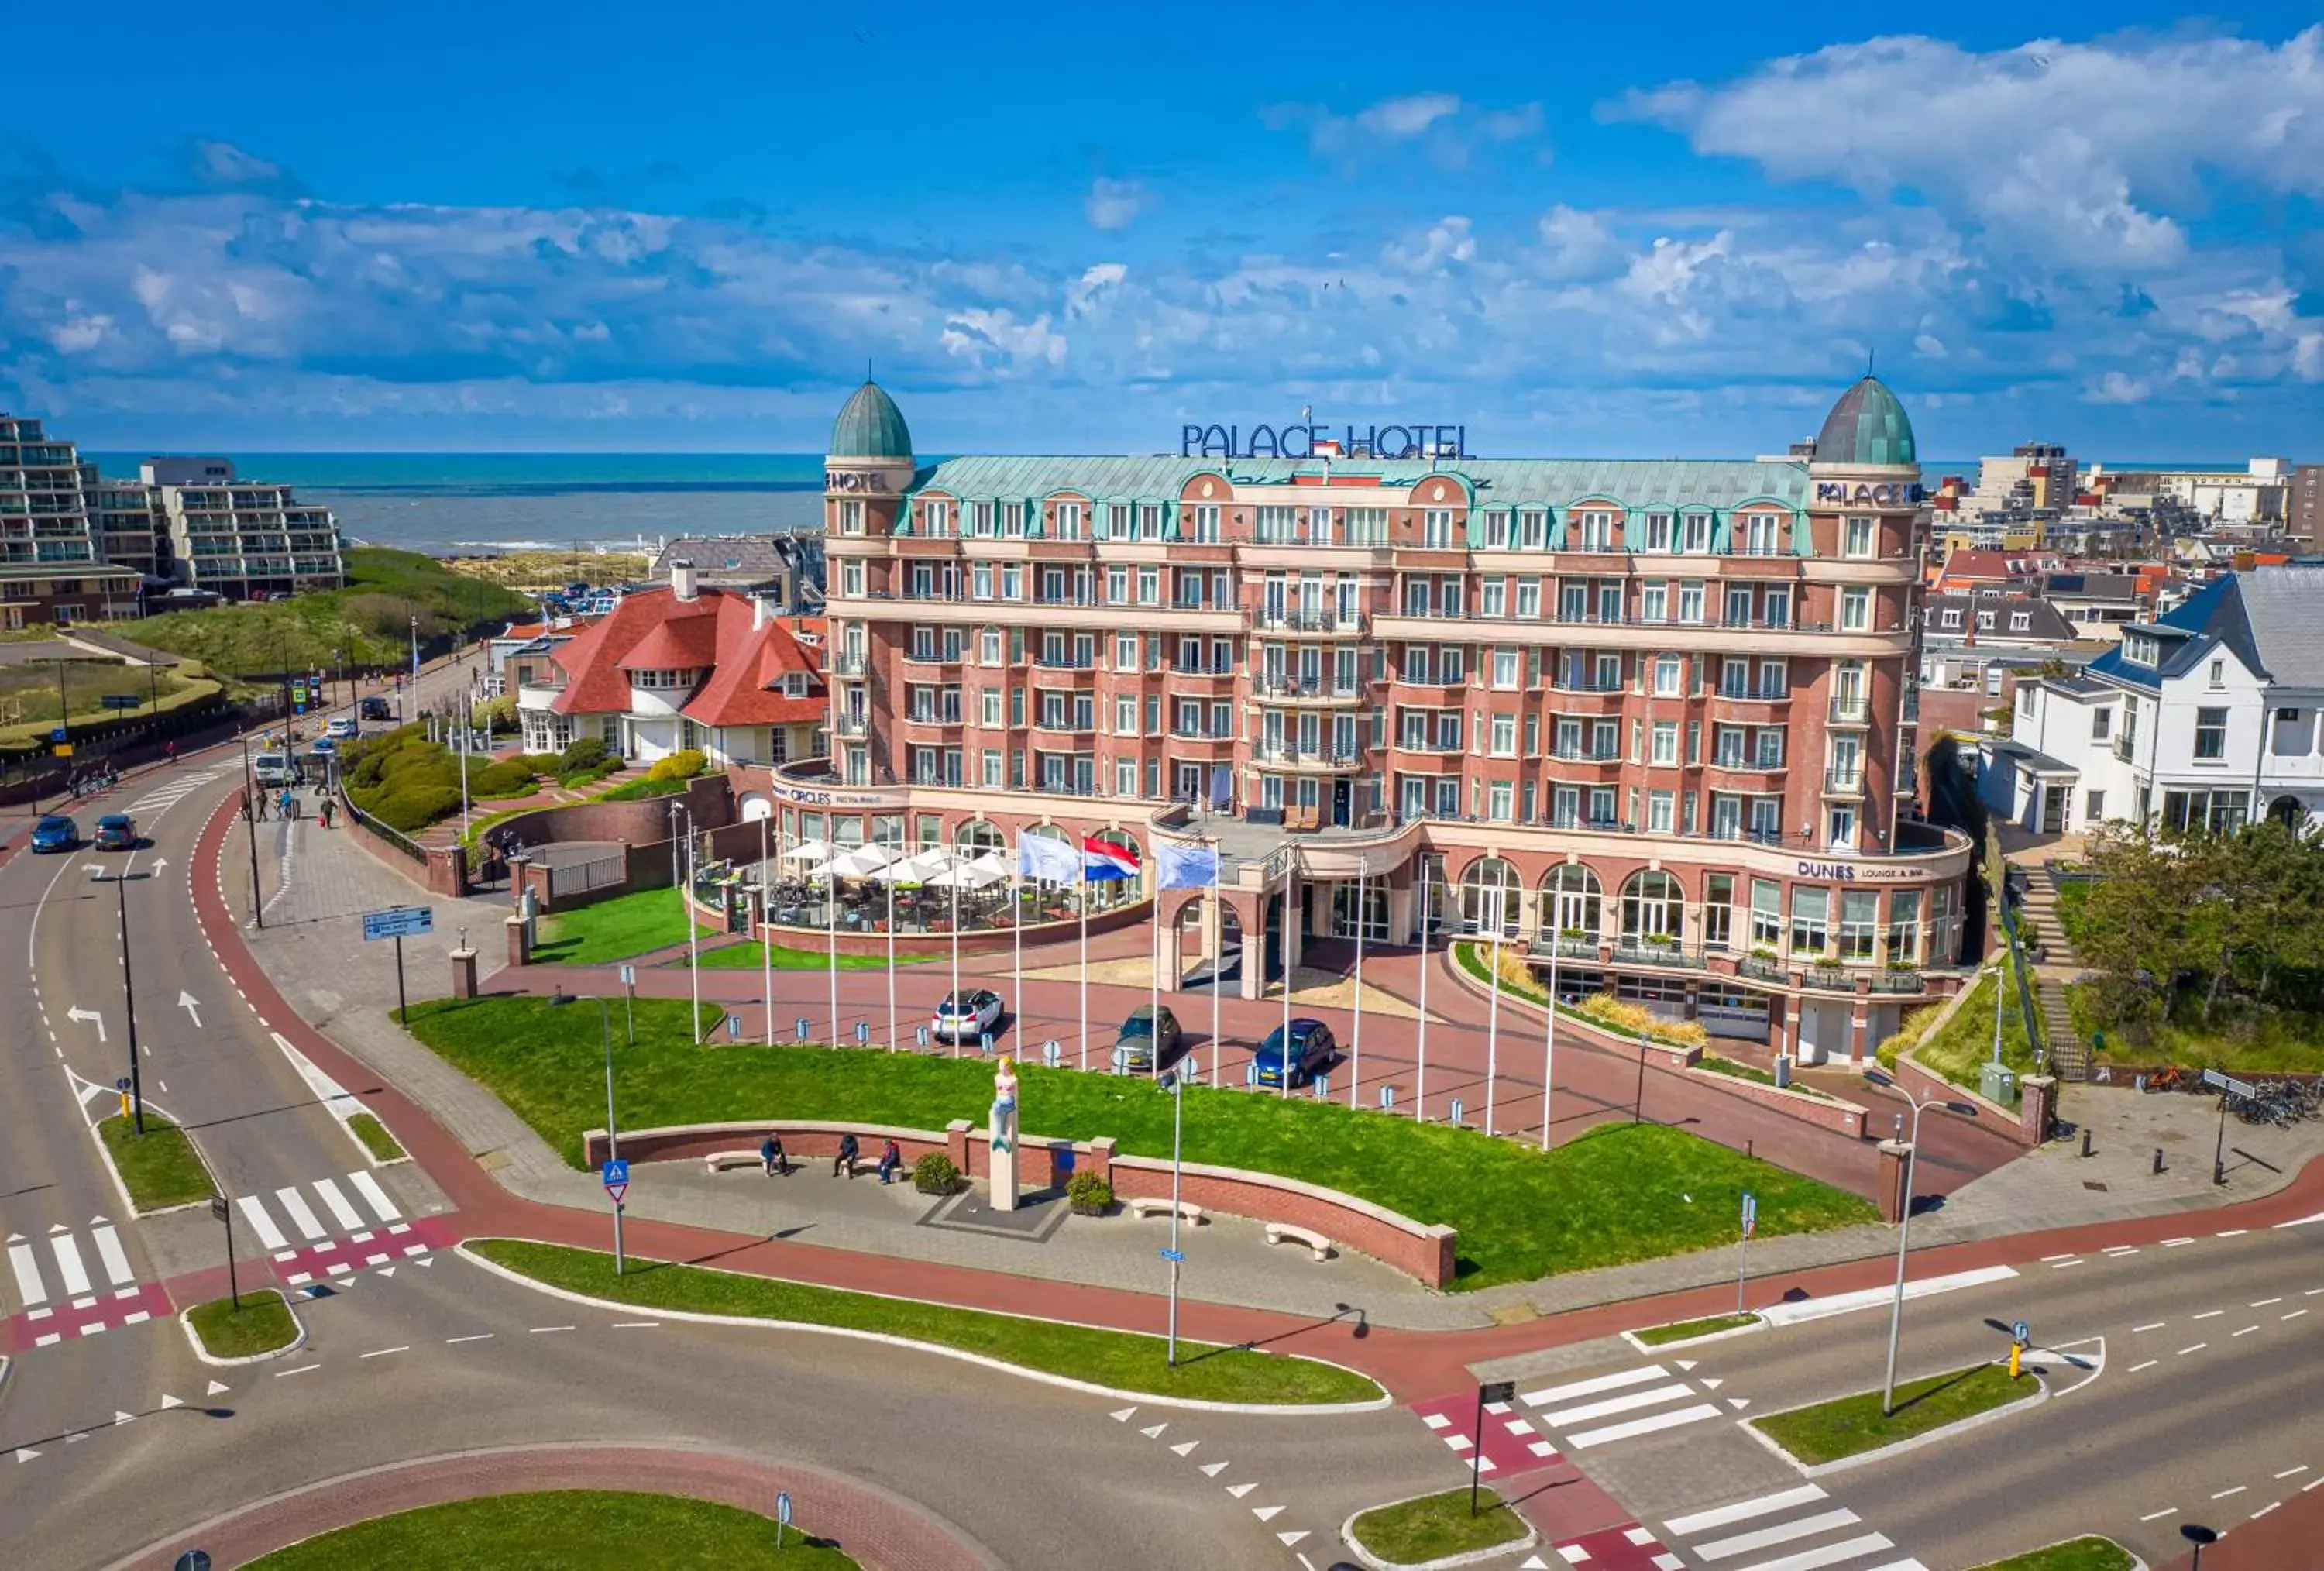 Property building, Bird's-eye View in Van der Valk Palace Hotel Noordwijk